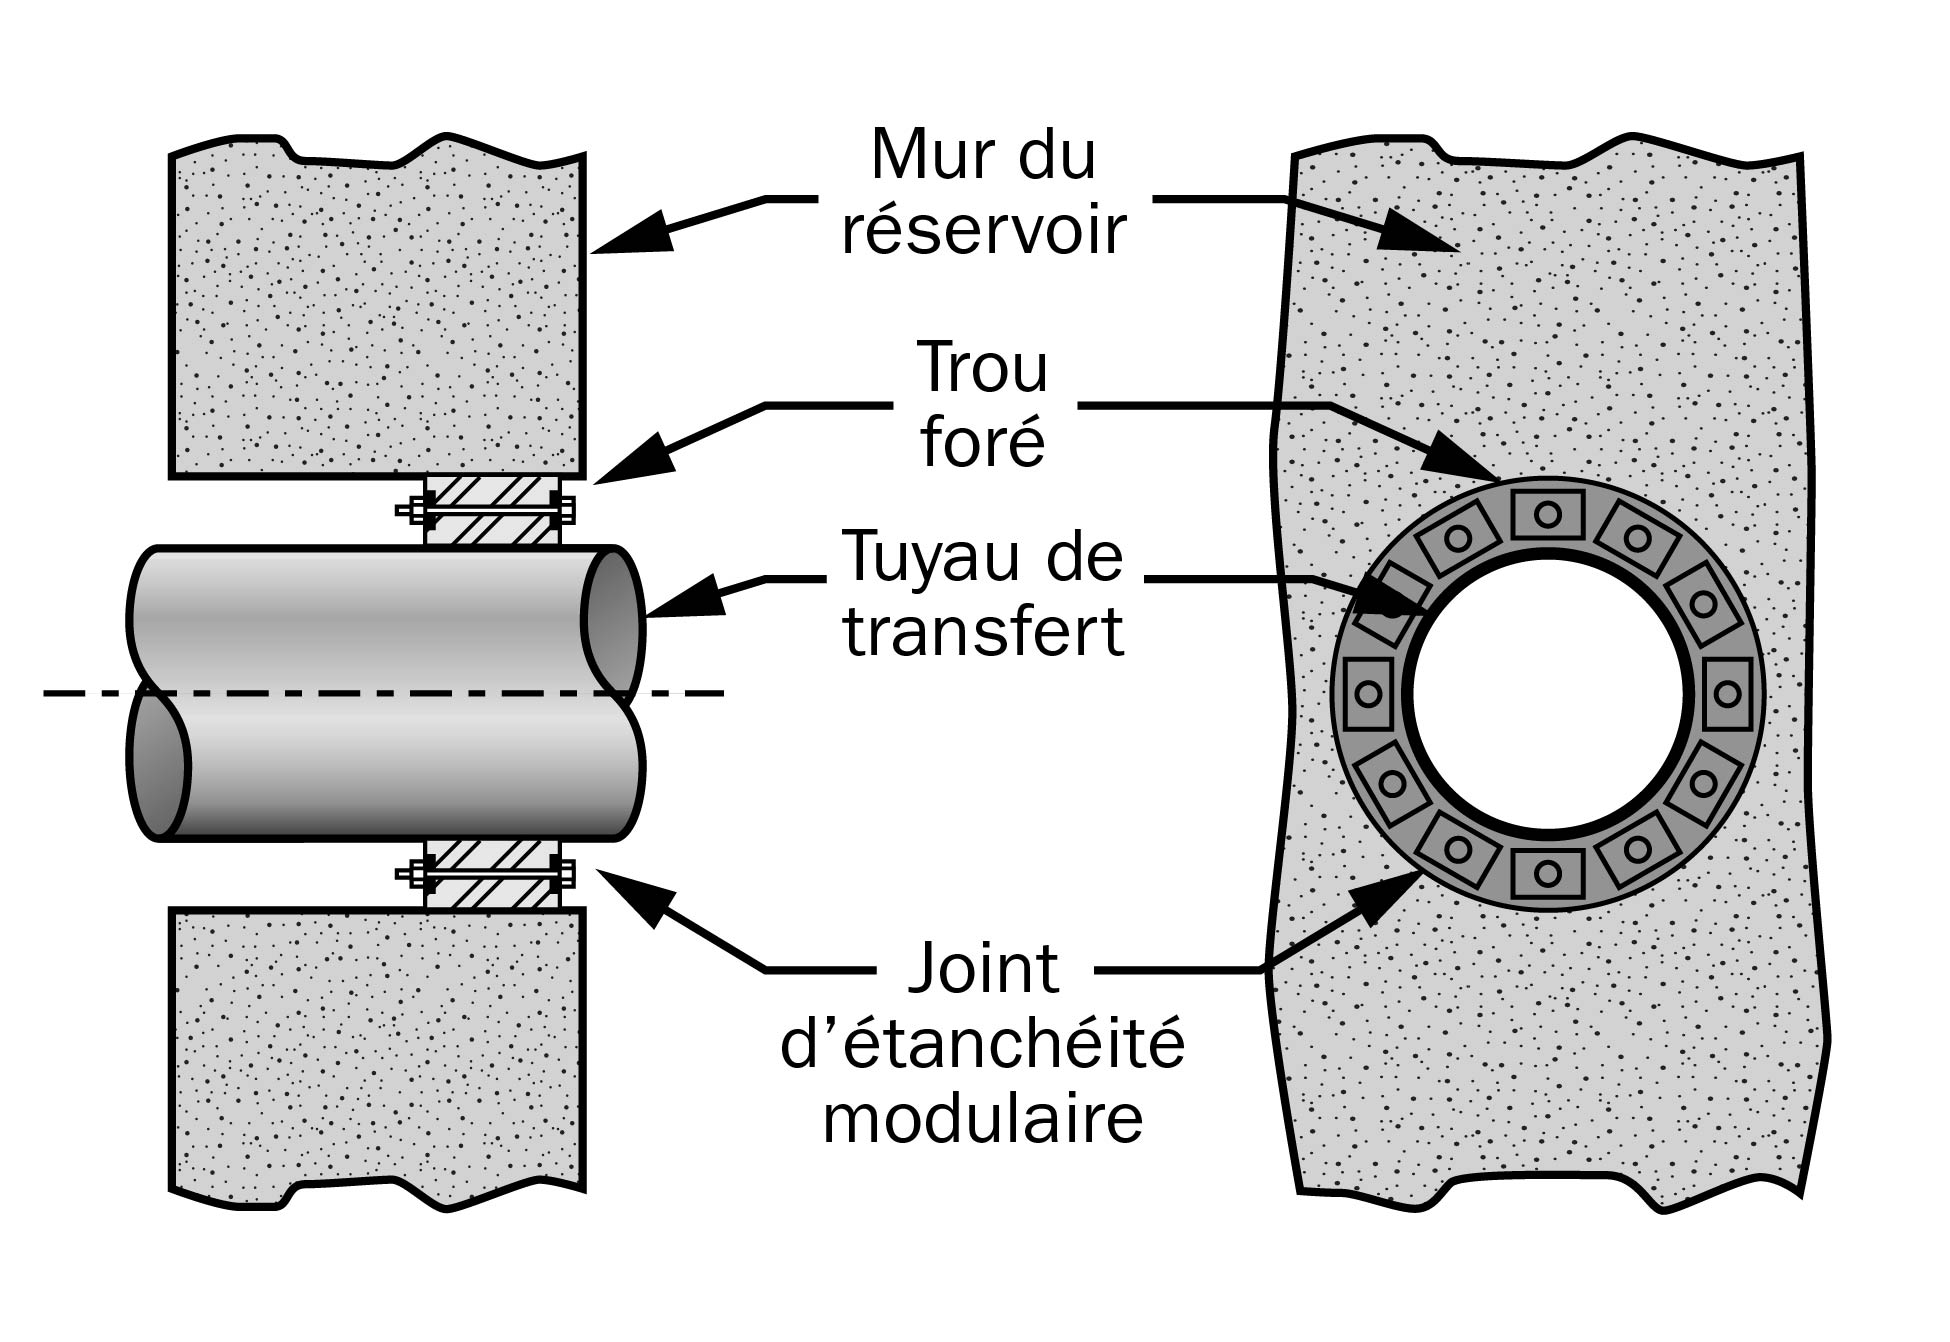 Schéma plus détaillé montrant un joint d’étanchéité modulaire de forme circulaire entre le tuyau et l’ouverture pratiquée dans le mur de béton, lequel prévient les fuites à l’ouverture.